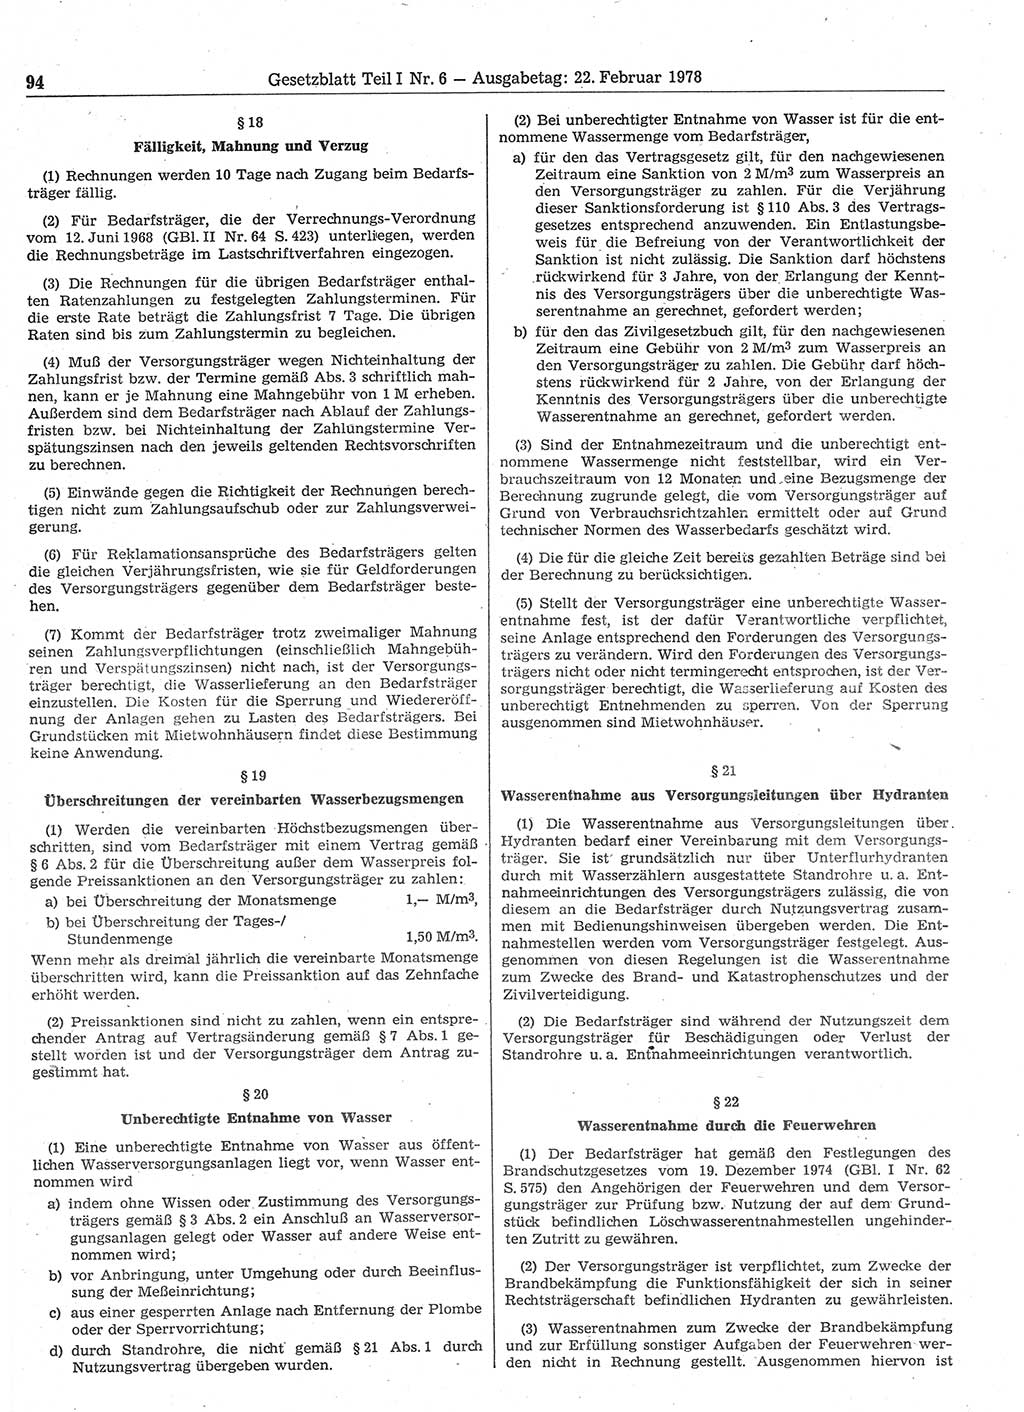 Gesetzblatt (GBl.) der Deutschen Demokratischen Republik (DDR) Teil Ⅰ 1978, Seite 94 (GBl. DDR Ⅰ 1978, S. 94)